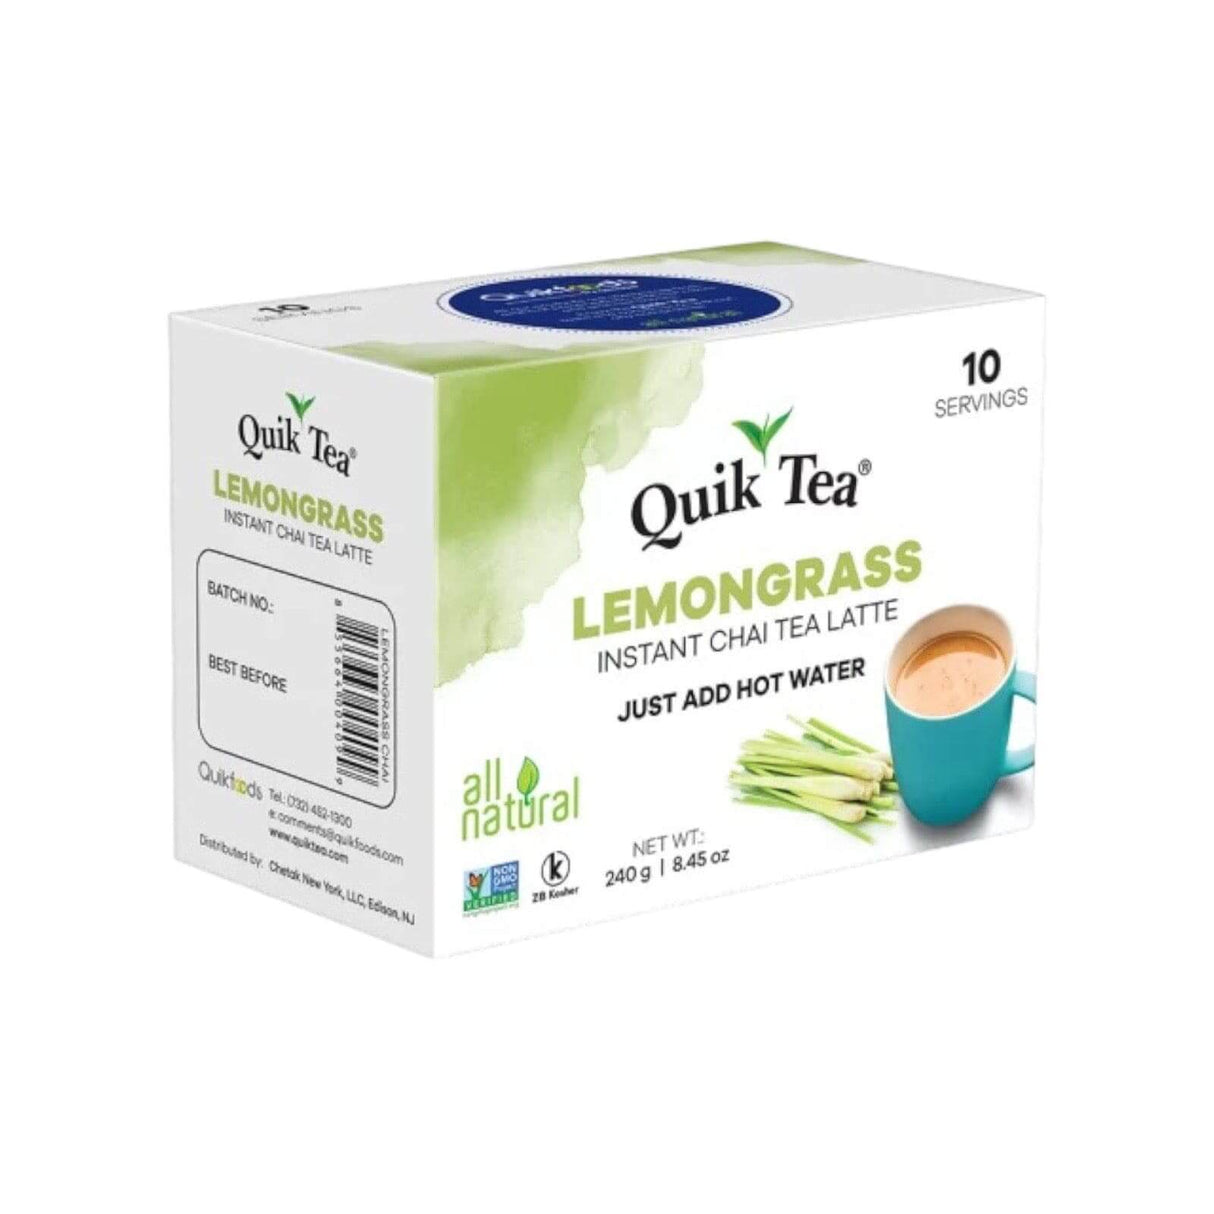 Quik Tea Lemongrass Instant Chai Tea Latte